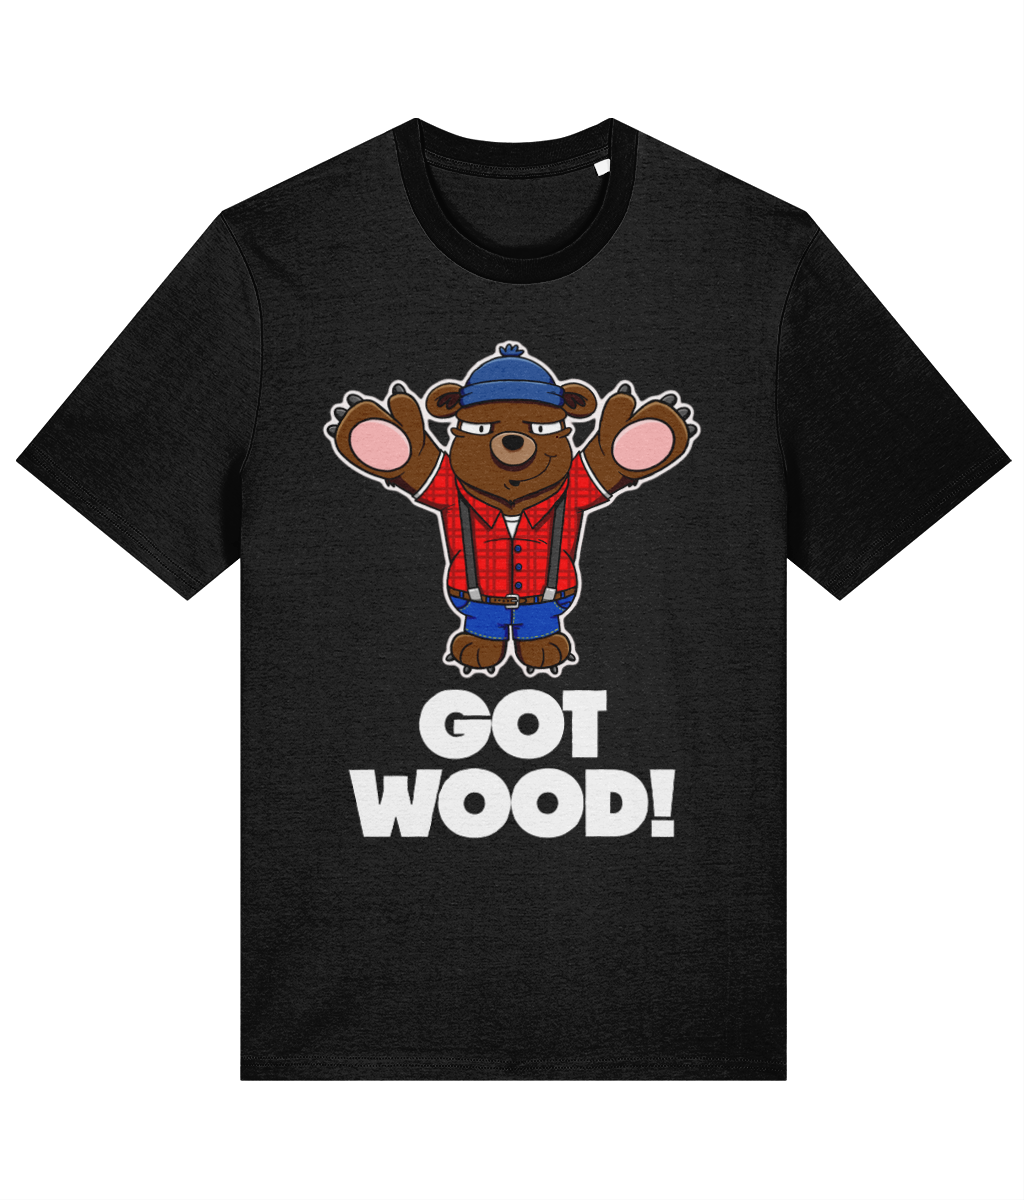 Got wood! T-Shirt